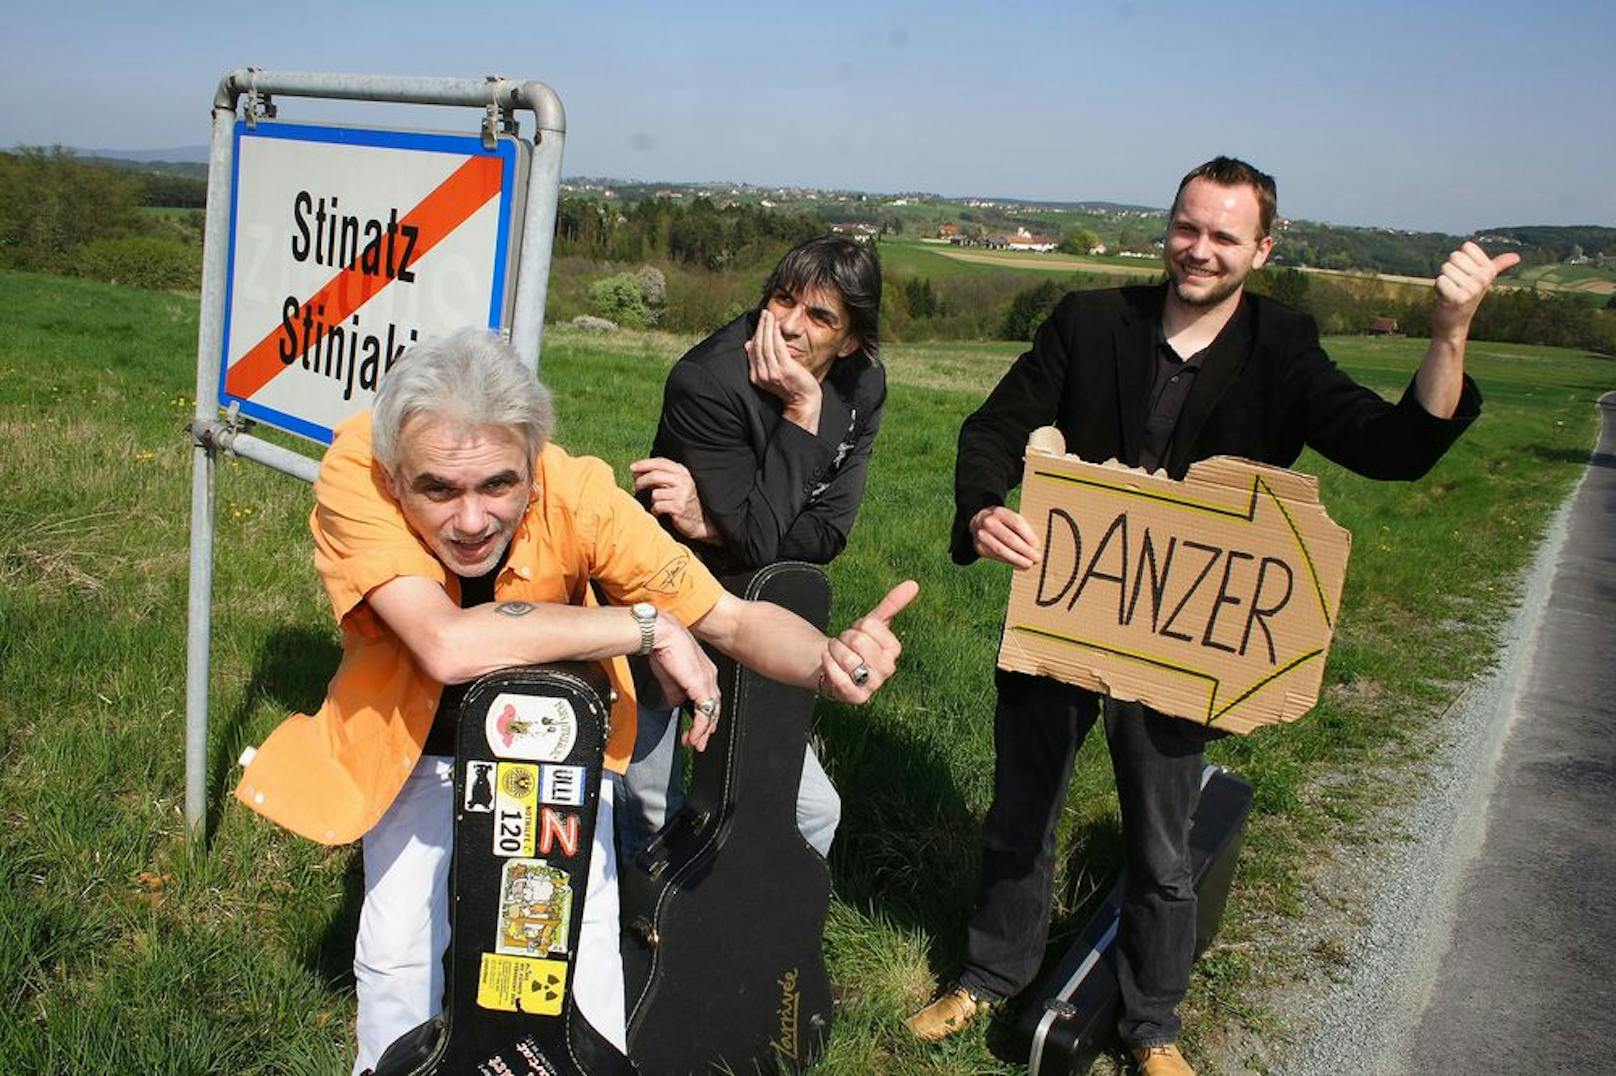 Stipsits, Uli Bäer &amp; Dr. Willi Ganster - eine generationsübergreifende Boygroup zieht mit drei Gitarren als Ehrenschützer des Austropop durch das Land. Ihr Motto: "Von Danzer bis Stinatz".